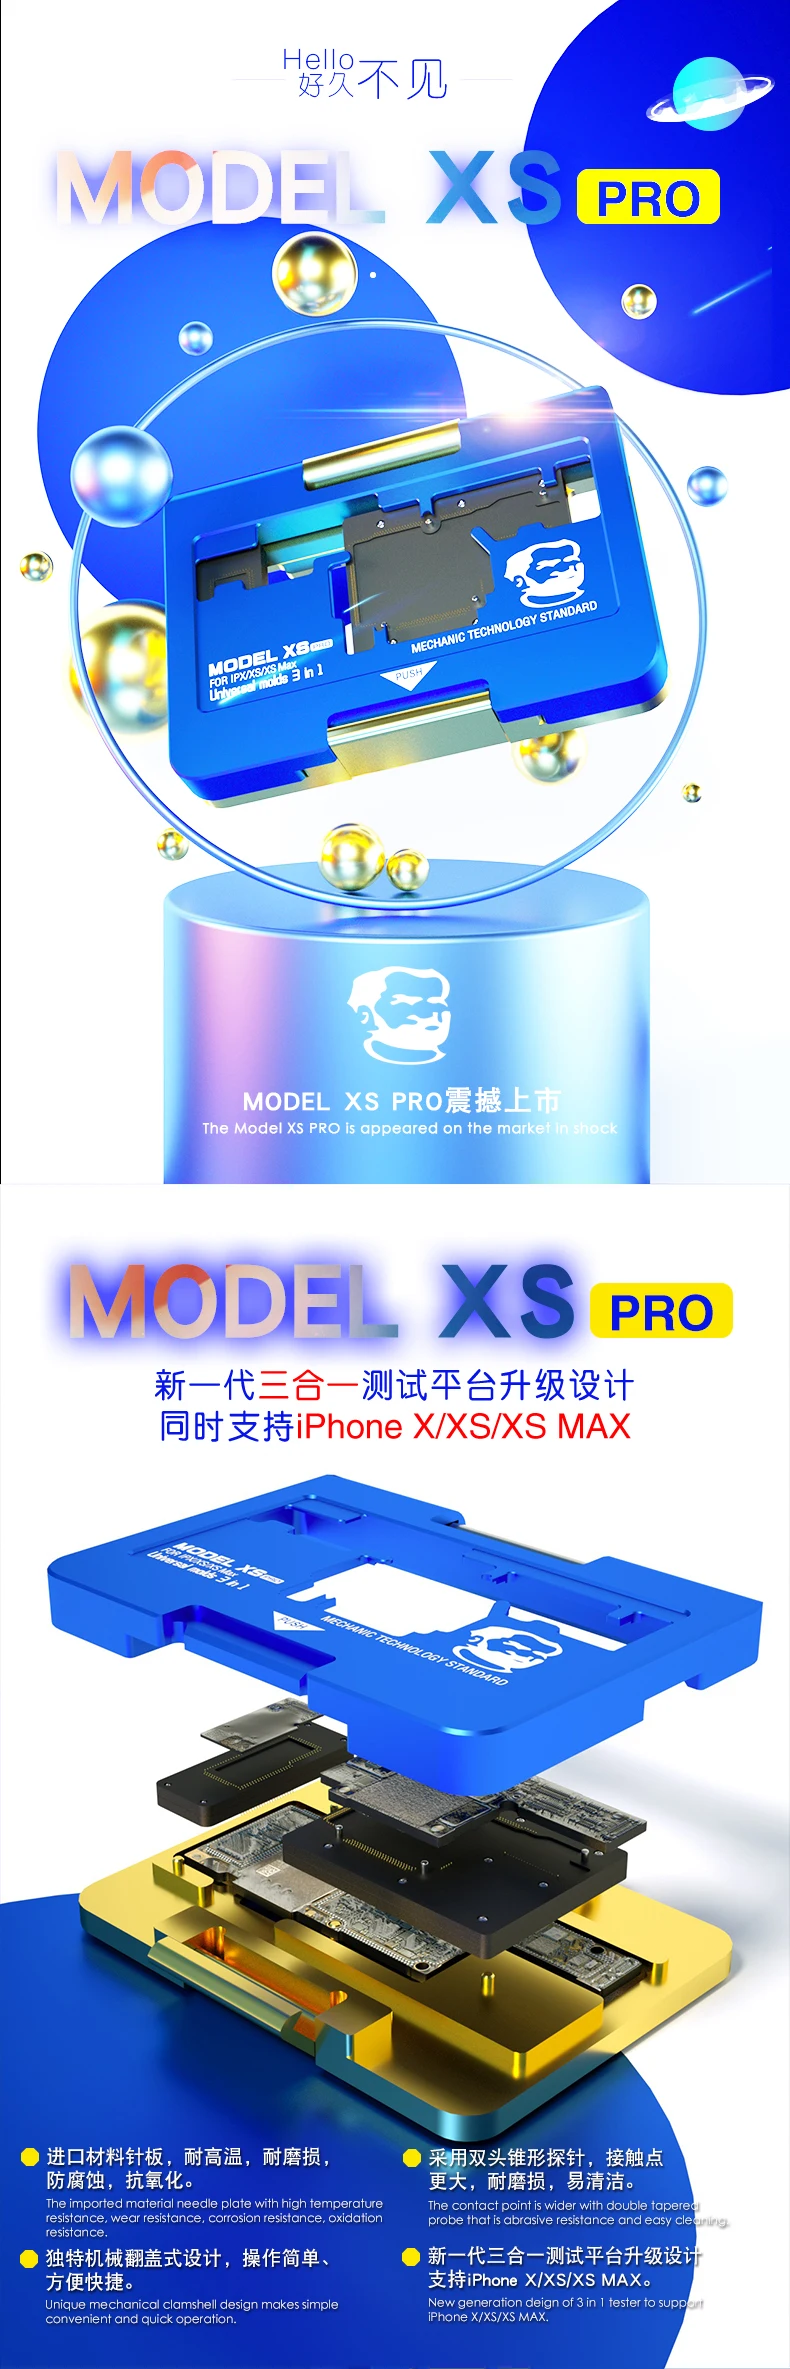 Механик модель XS Pro iSocket PCB держатель материнской платы приспособление для iPhone X XS MAX верхний и тестер слоев техническое обслуживание приспособление